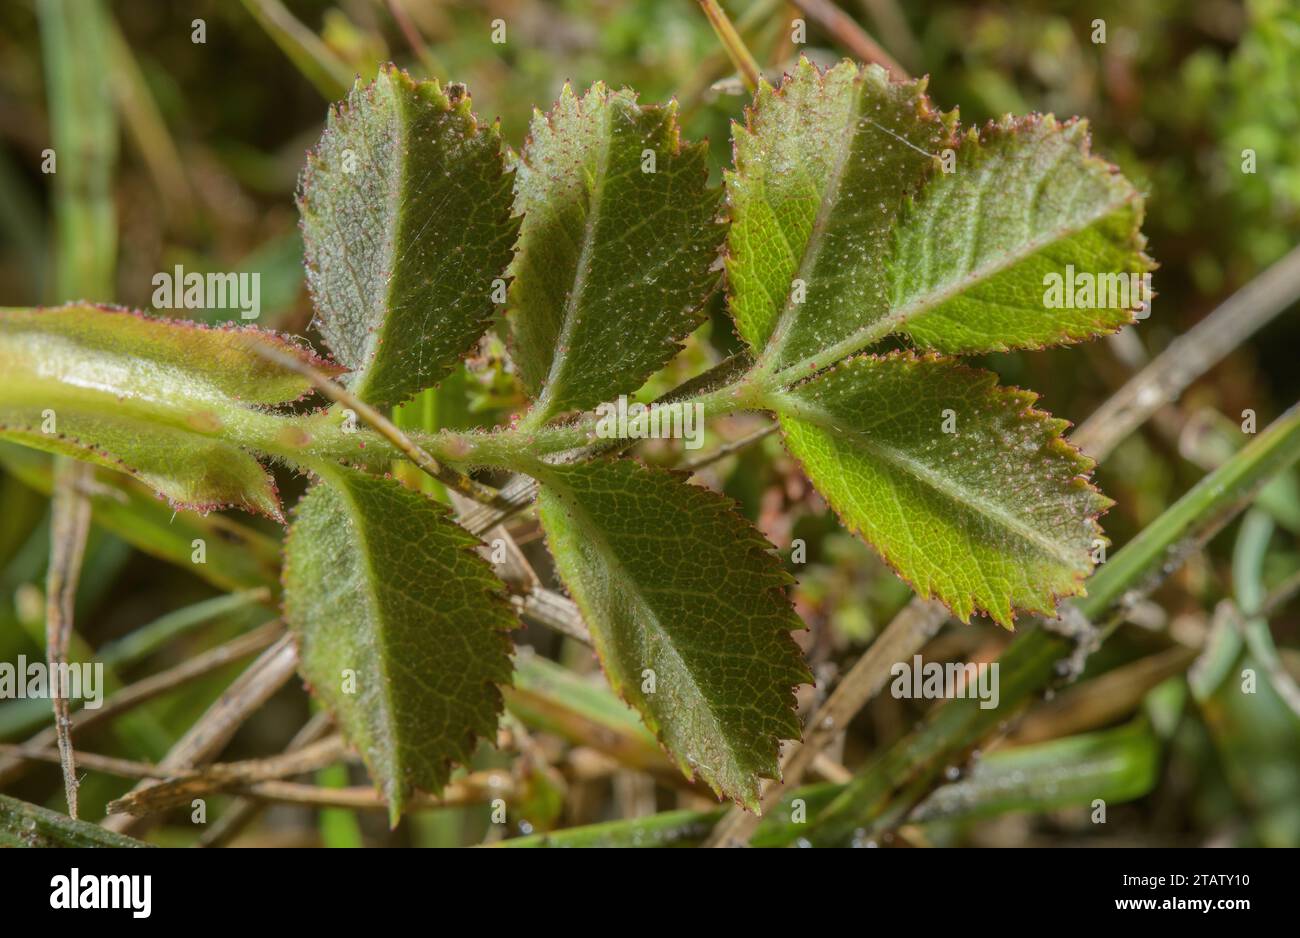 Gefiedertes Blatt der süßen Brühe, Rosa rubiginosa, mit Drüsenhaaren und Stachelstacheln. Stockfoto